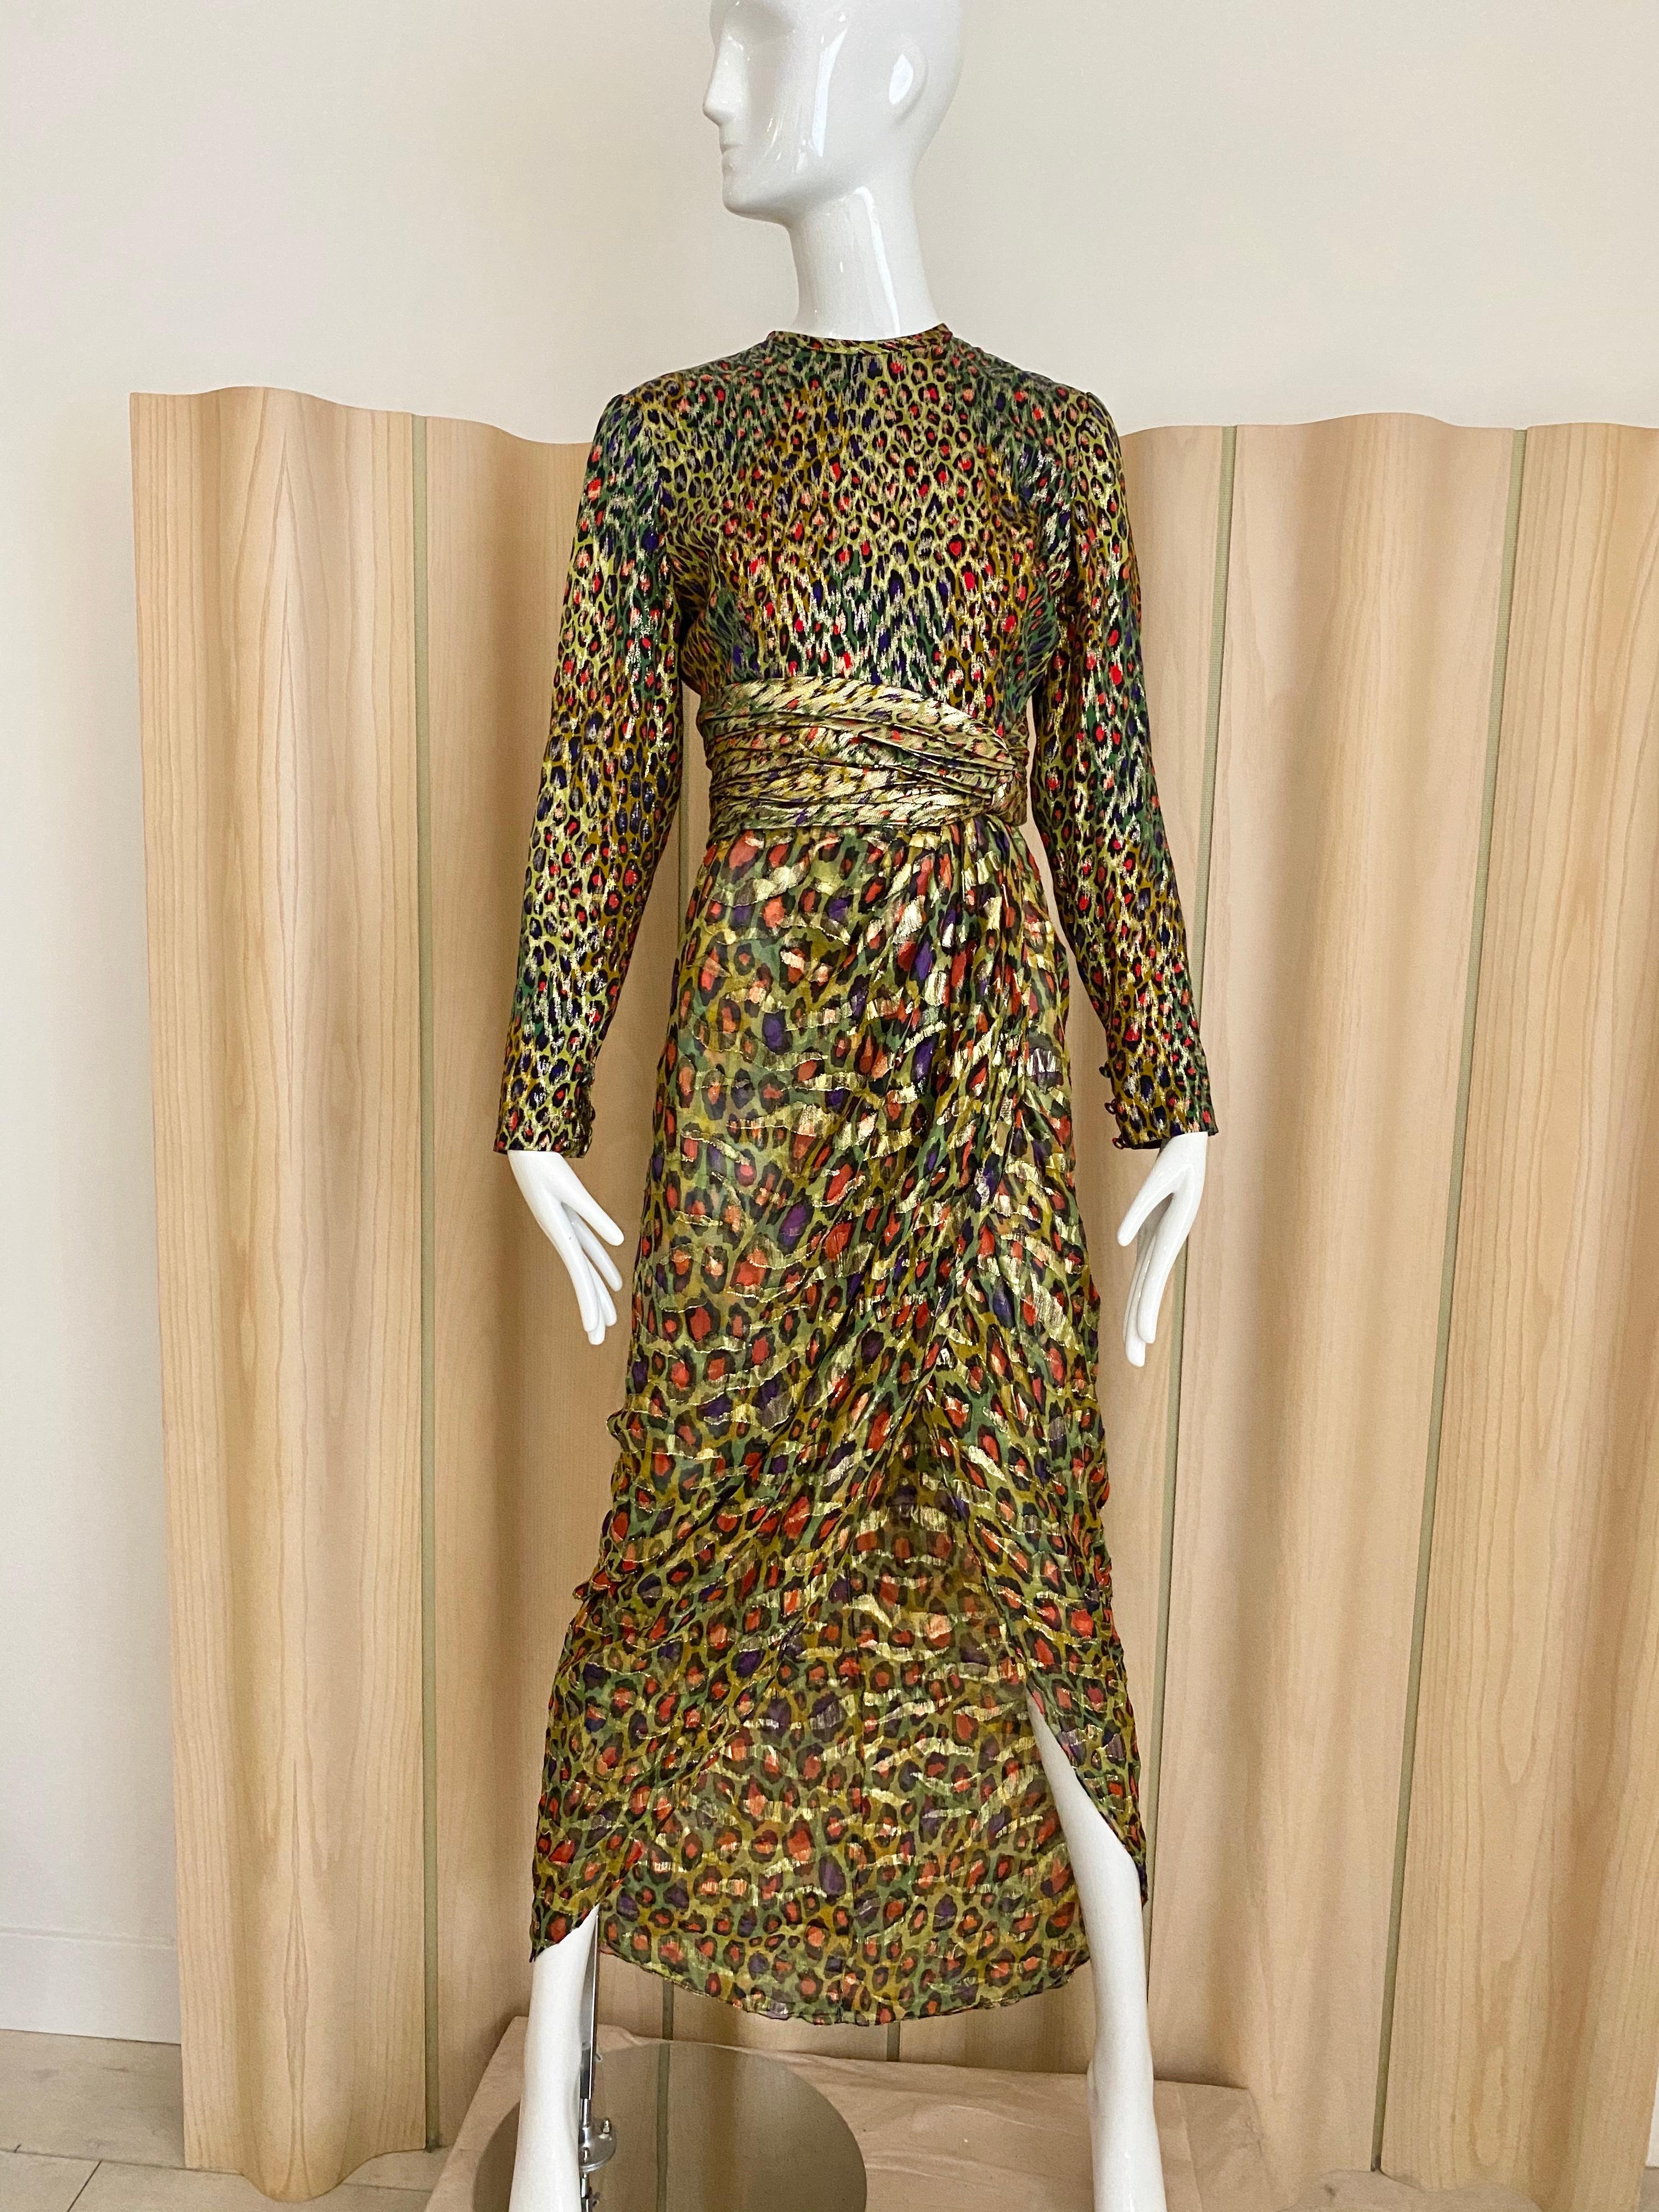 Bill Blass 1989 Seidenlame mit metallischem Leopardenmuster in Grün, Rot und Gold  Langärmeliges Kleid mit Schlitz. 
Büste; 36